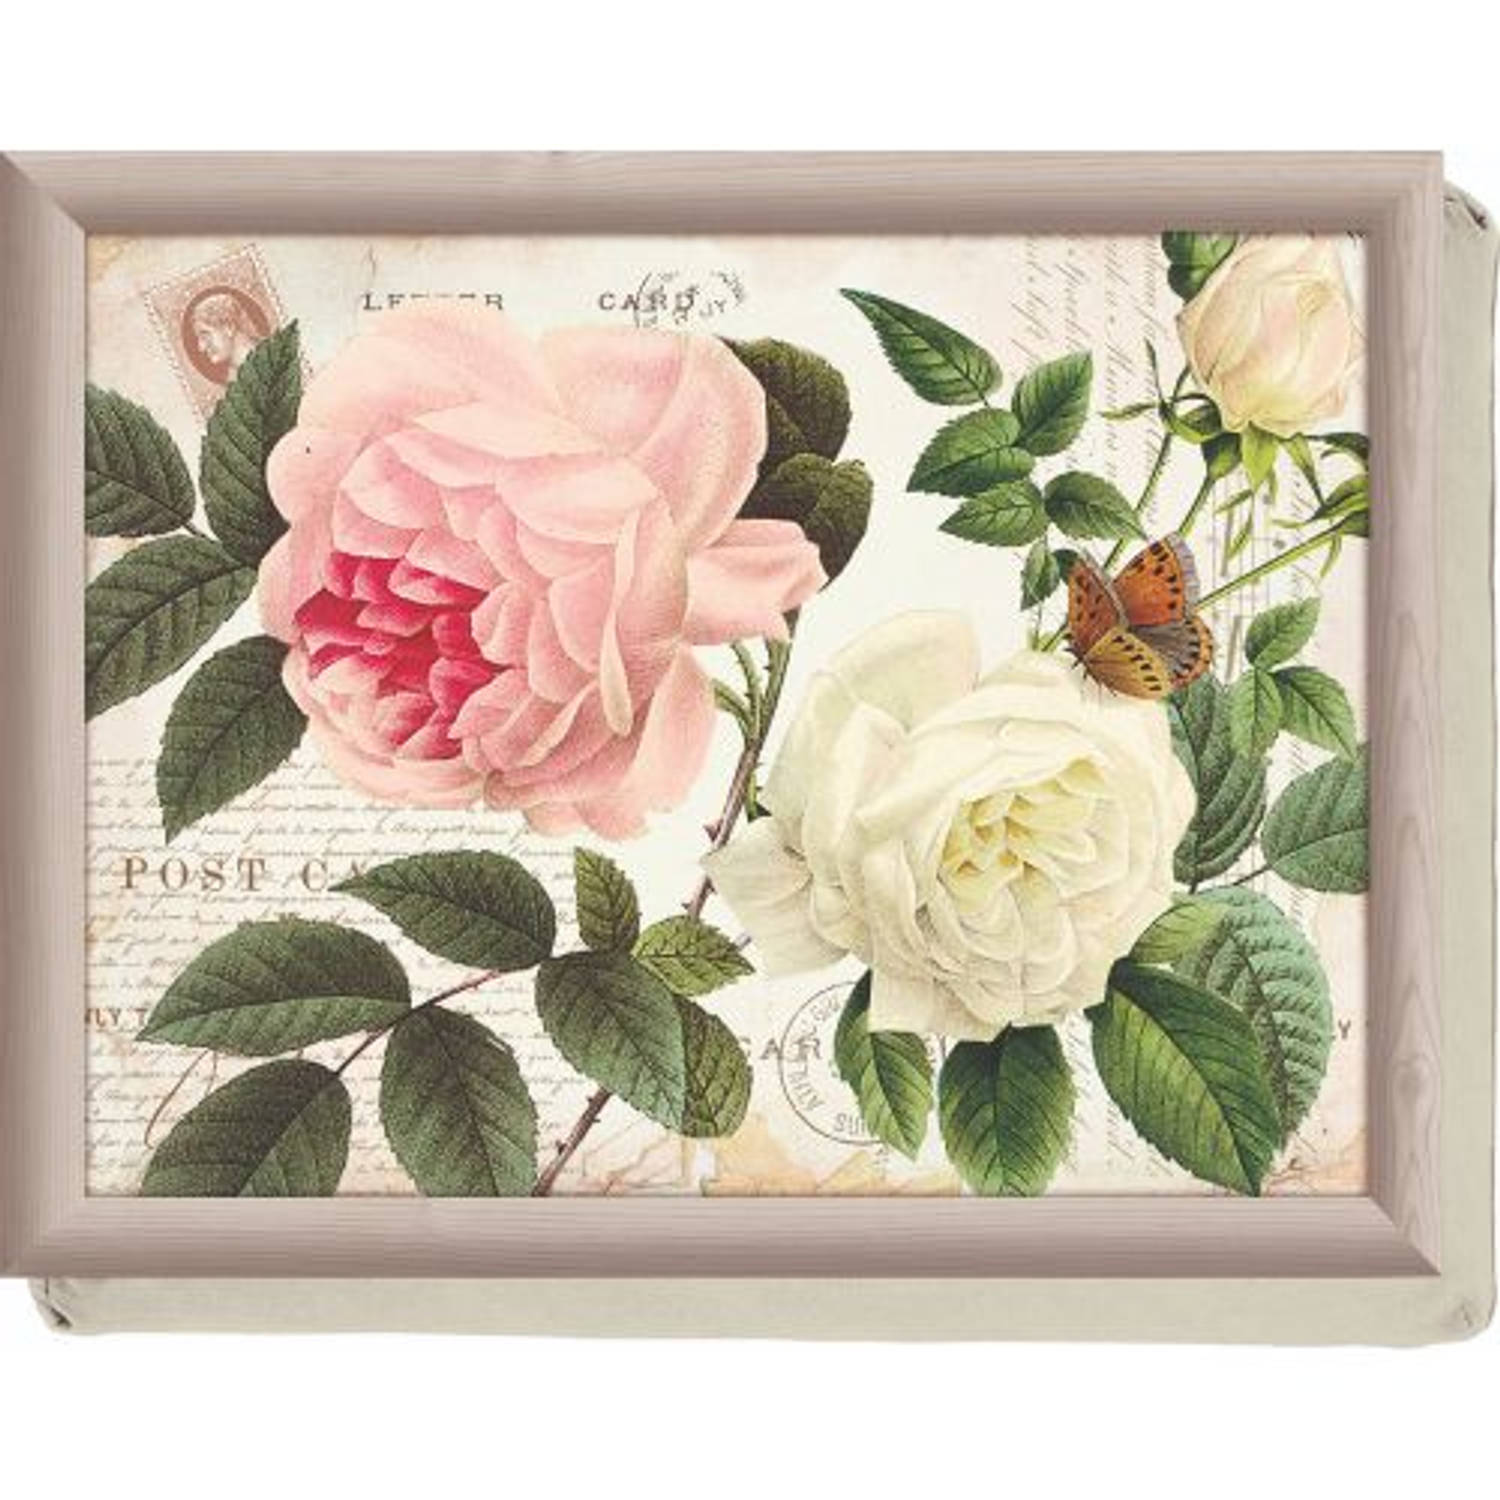 Laptray, Schoot Dienblad, Rose Garden, 44 x 34 cm - Creative Tops